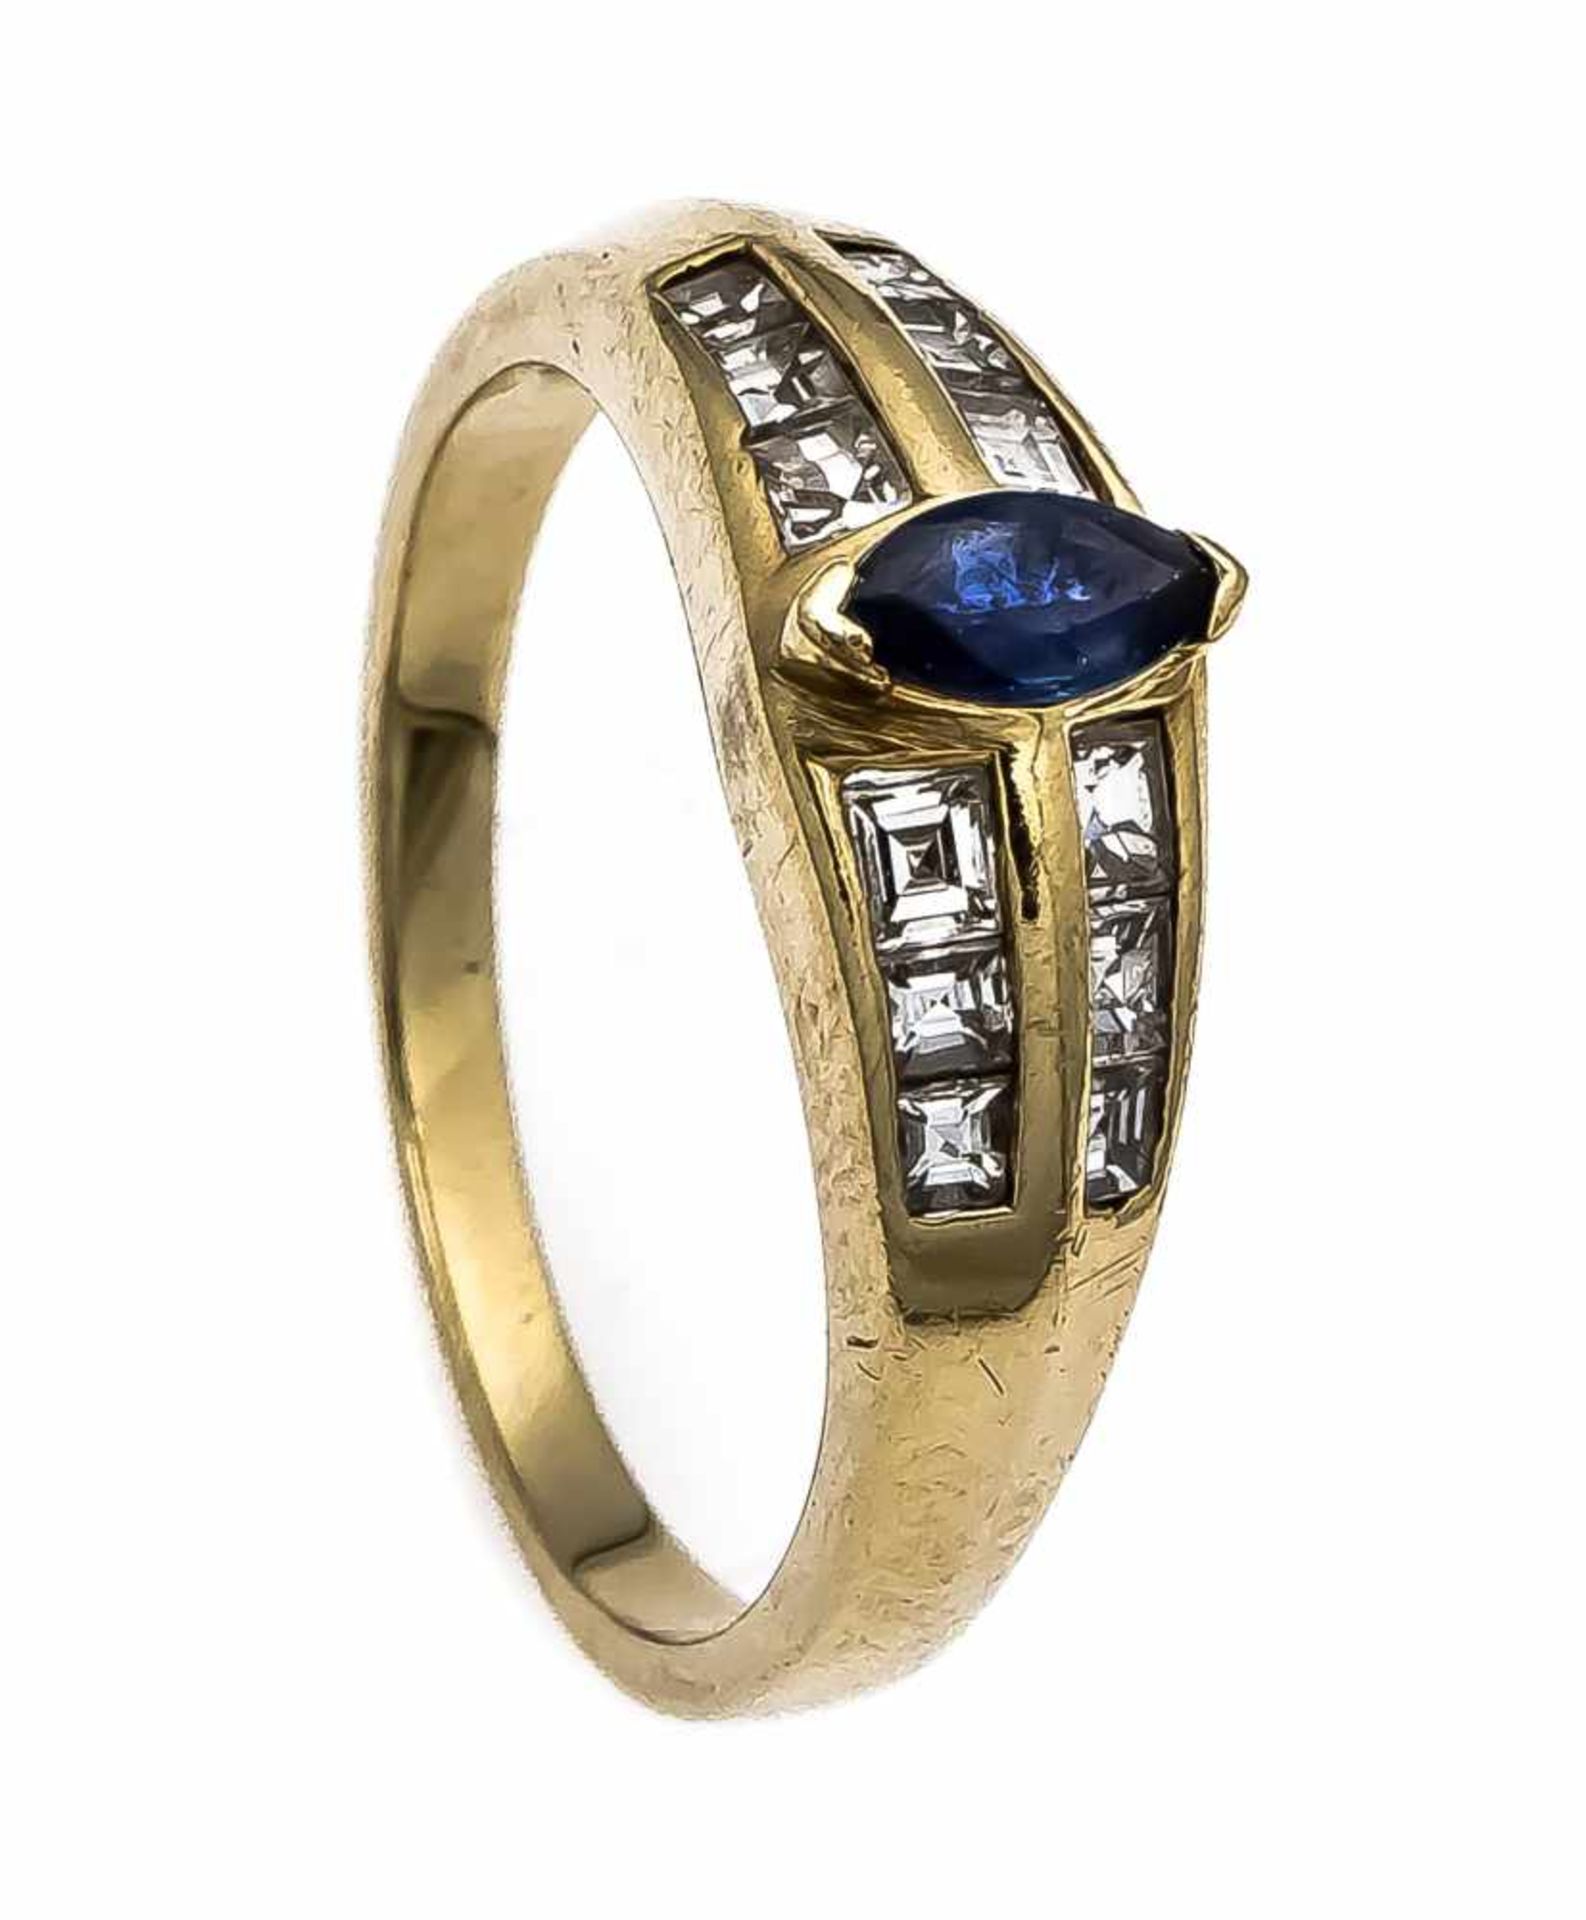 Saphir-Diamant-Ring GG 585/000 mit einem navetteförmig fac. Saphir 5 x 3 mm und Diamant-Carrés, zus.